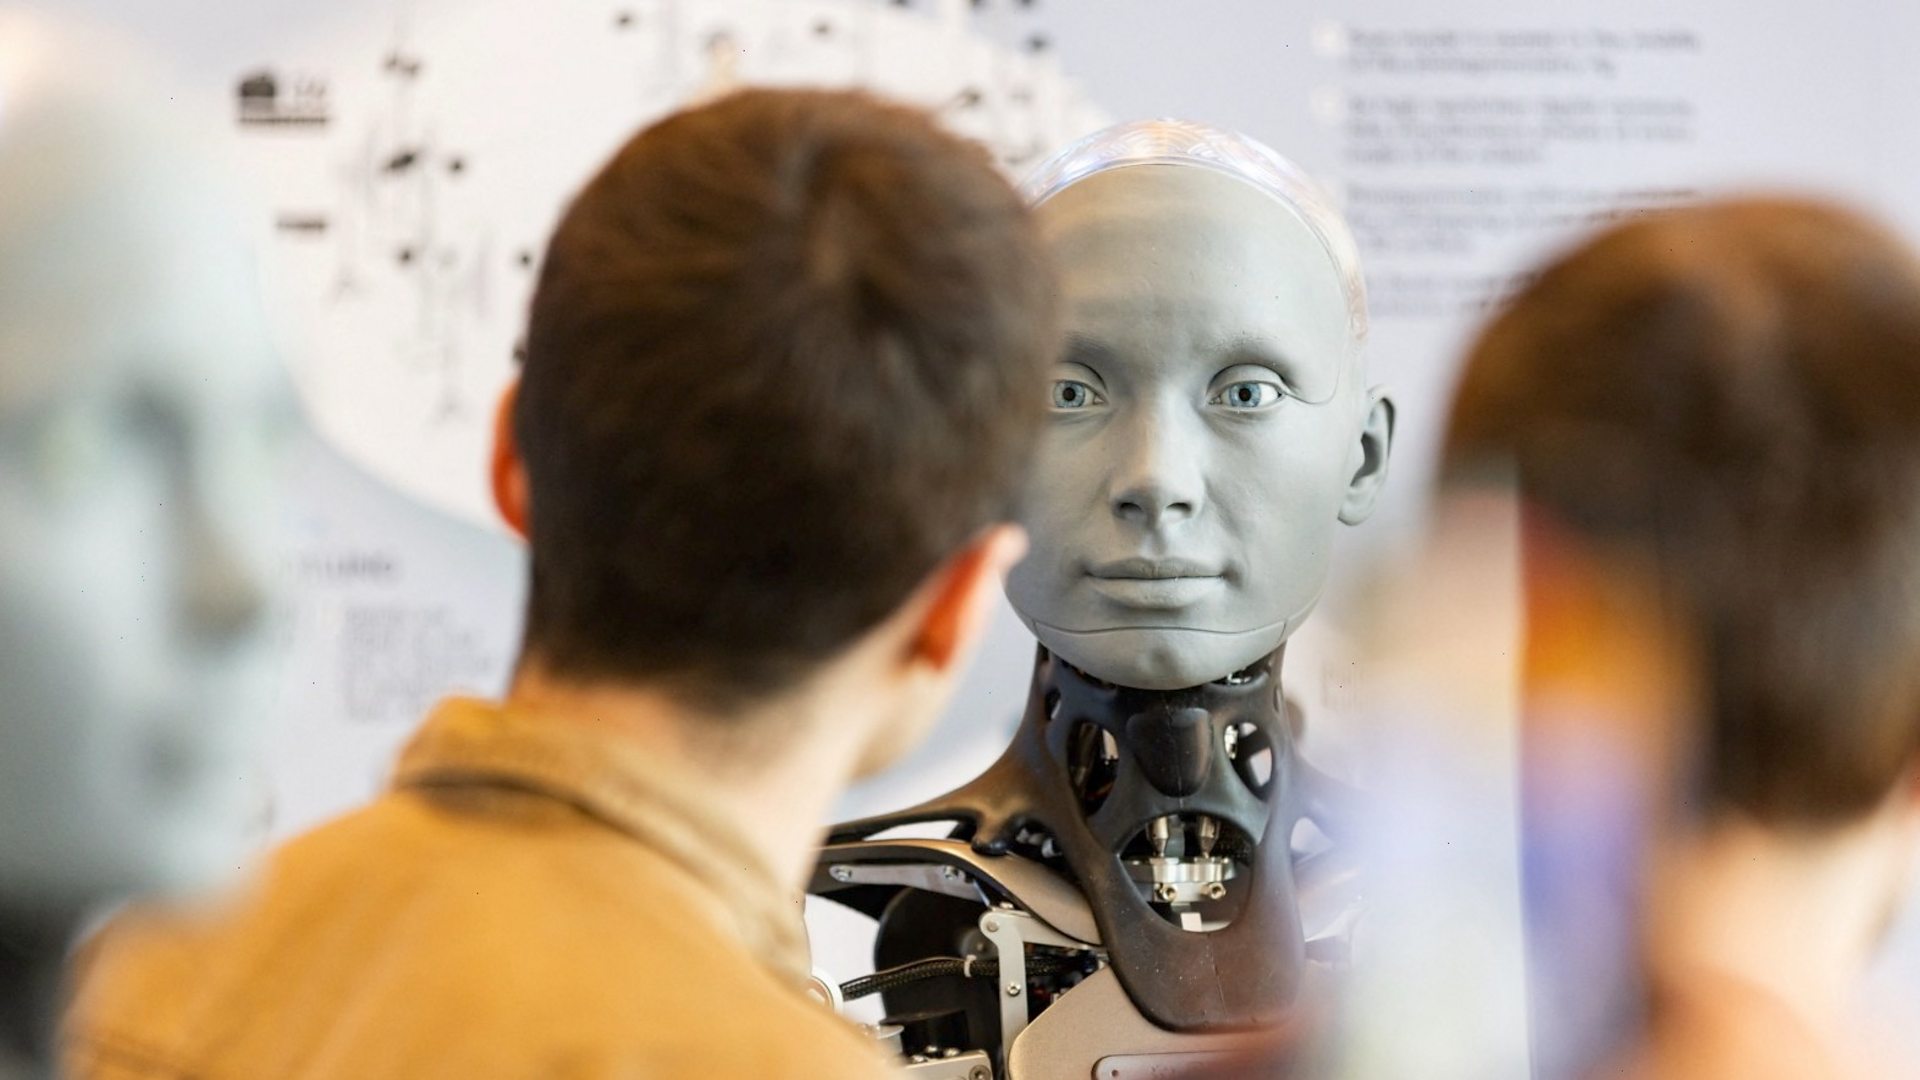 Un robot parle d'intelligence artificielle - BBC News Afrique